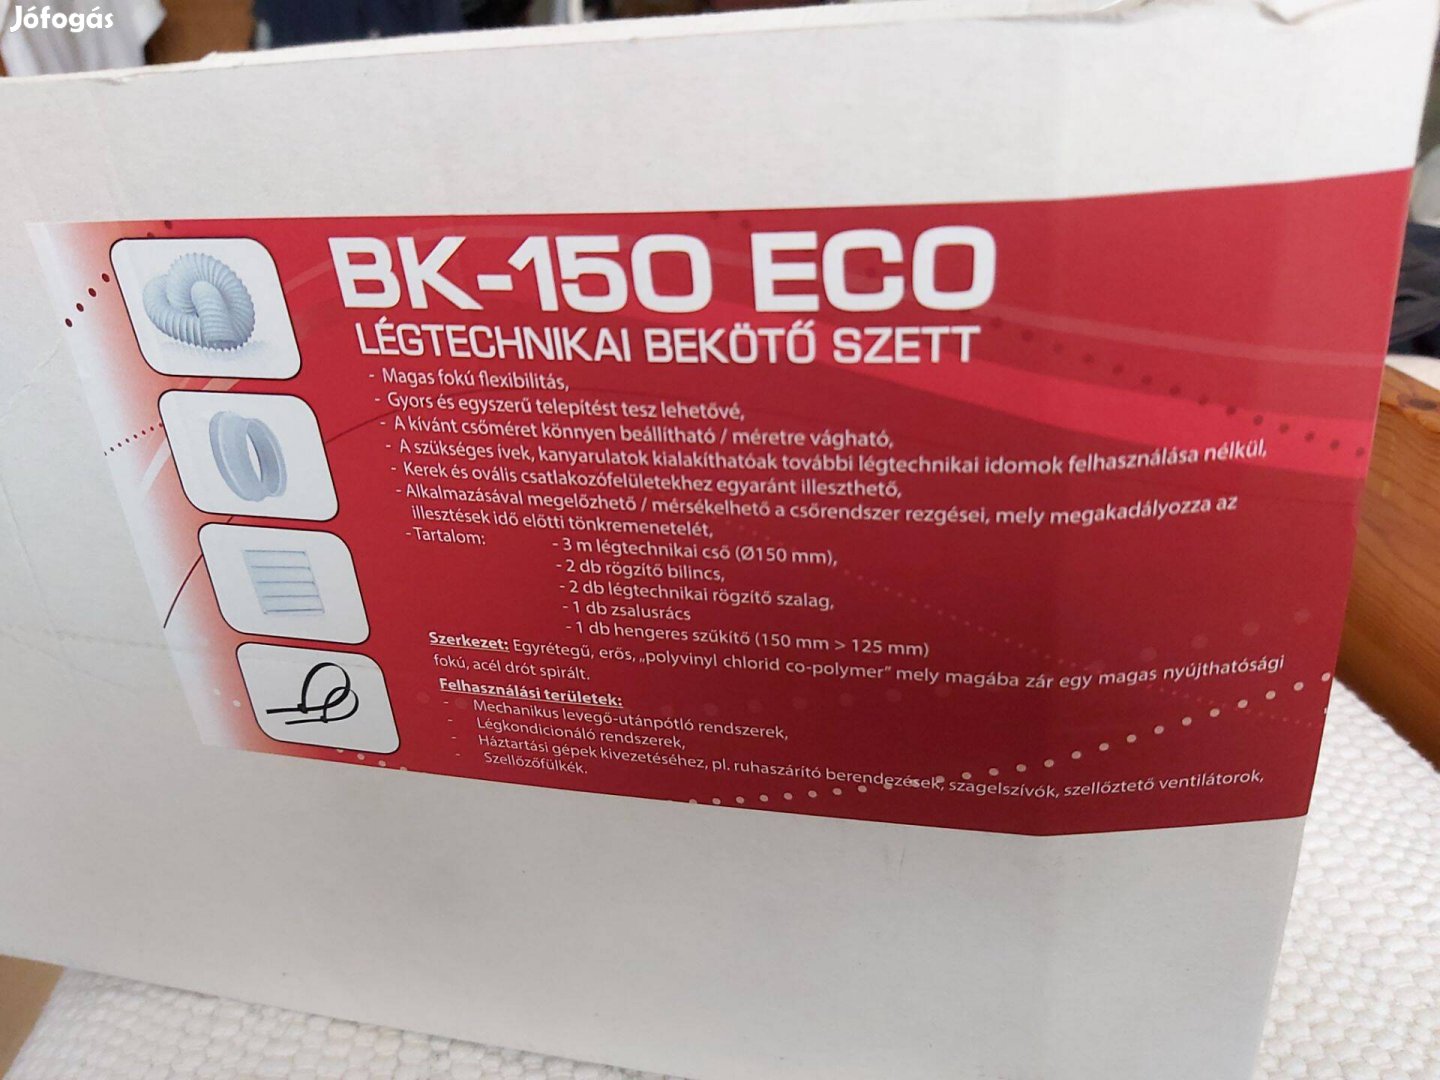 BK-150 eco légtechnikai bekötő szett